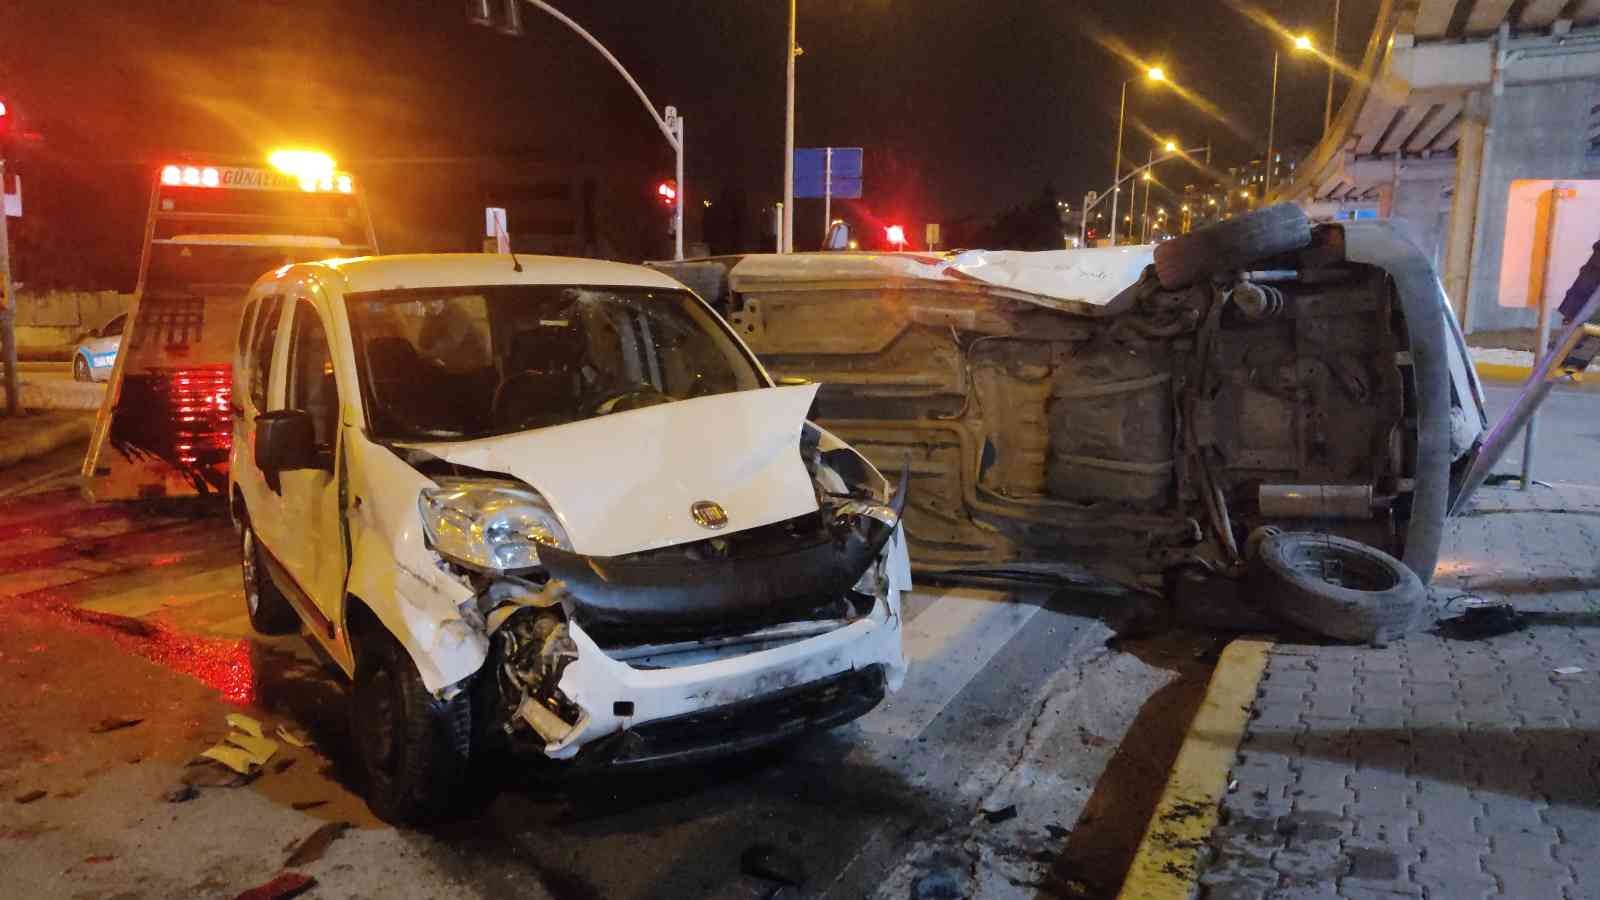 İki hafif ticari araç kavşakta çarpıştı: 2 yaralı #kocaeli